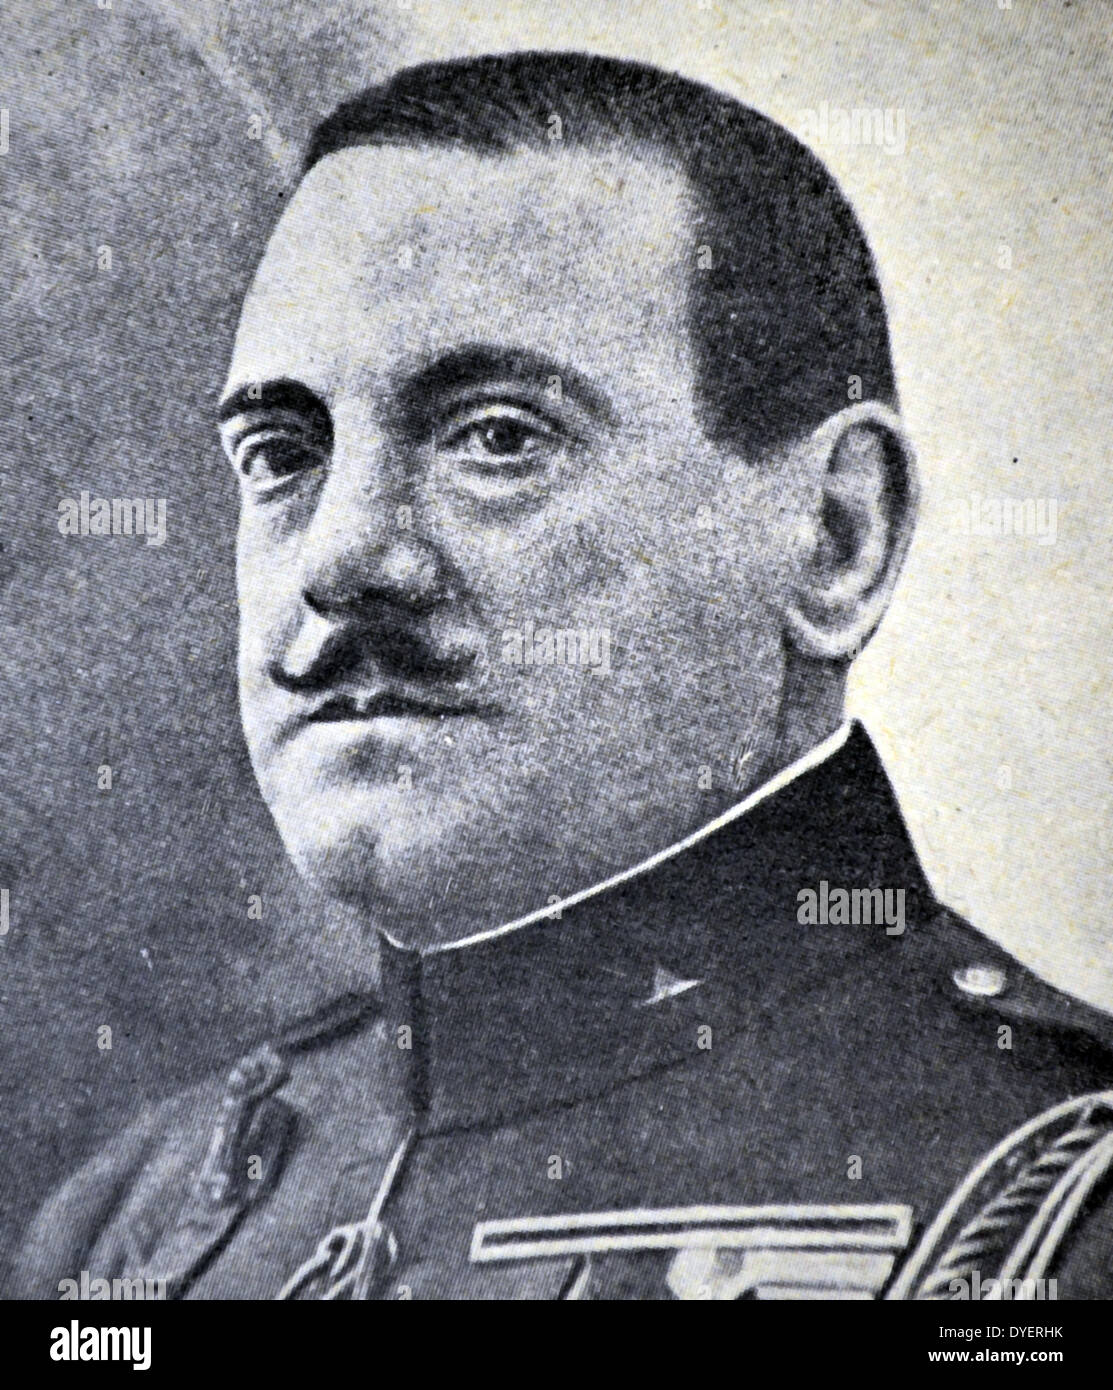 Severiano Martinez Anido (Ferrol, La Coruña, 21 maggio 1862 - Valladolid, 24 dicembre 1938) era un esercito spagnolo, il Ministro degli interni con la dittatura di Primo de Rivera e ministro dell'ordine pubblico del primo governo del generale Francisco Franco. Foto Stock